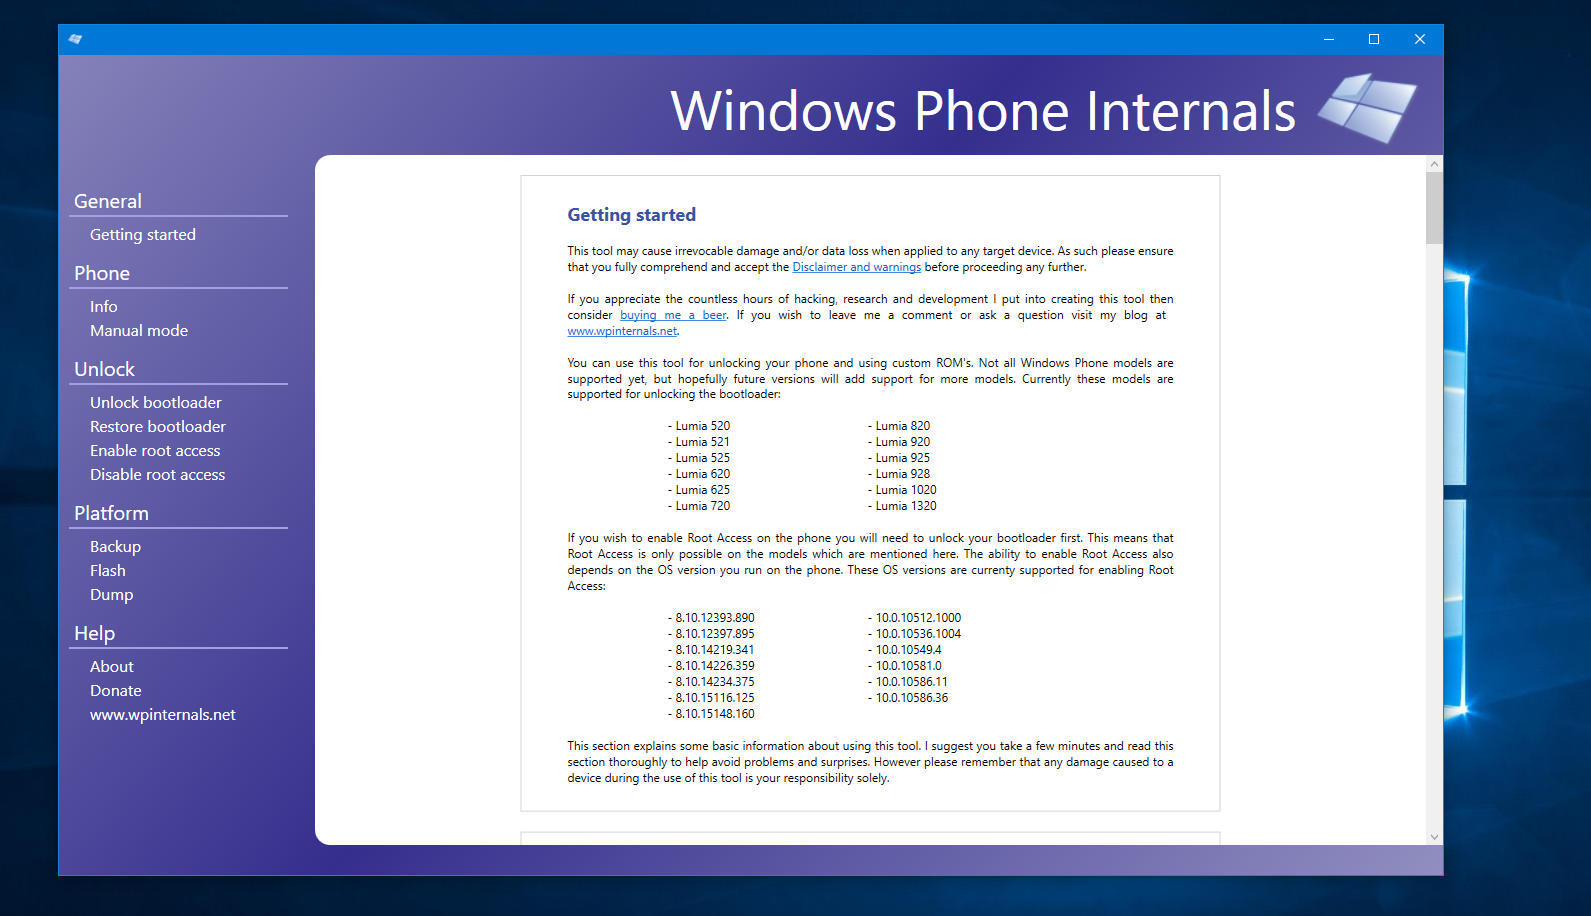 Windows Phone Internals gets updated